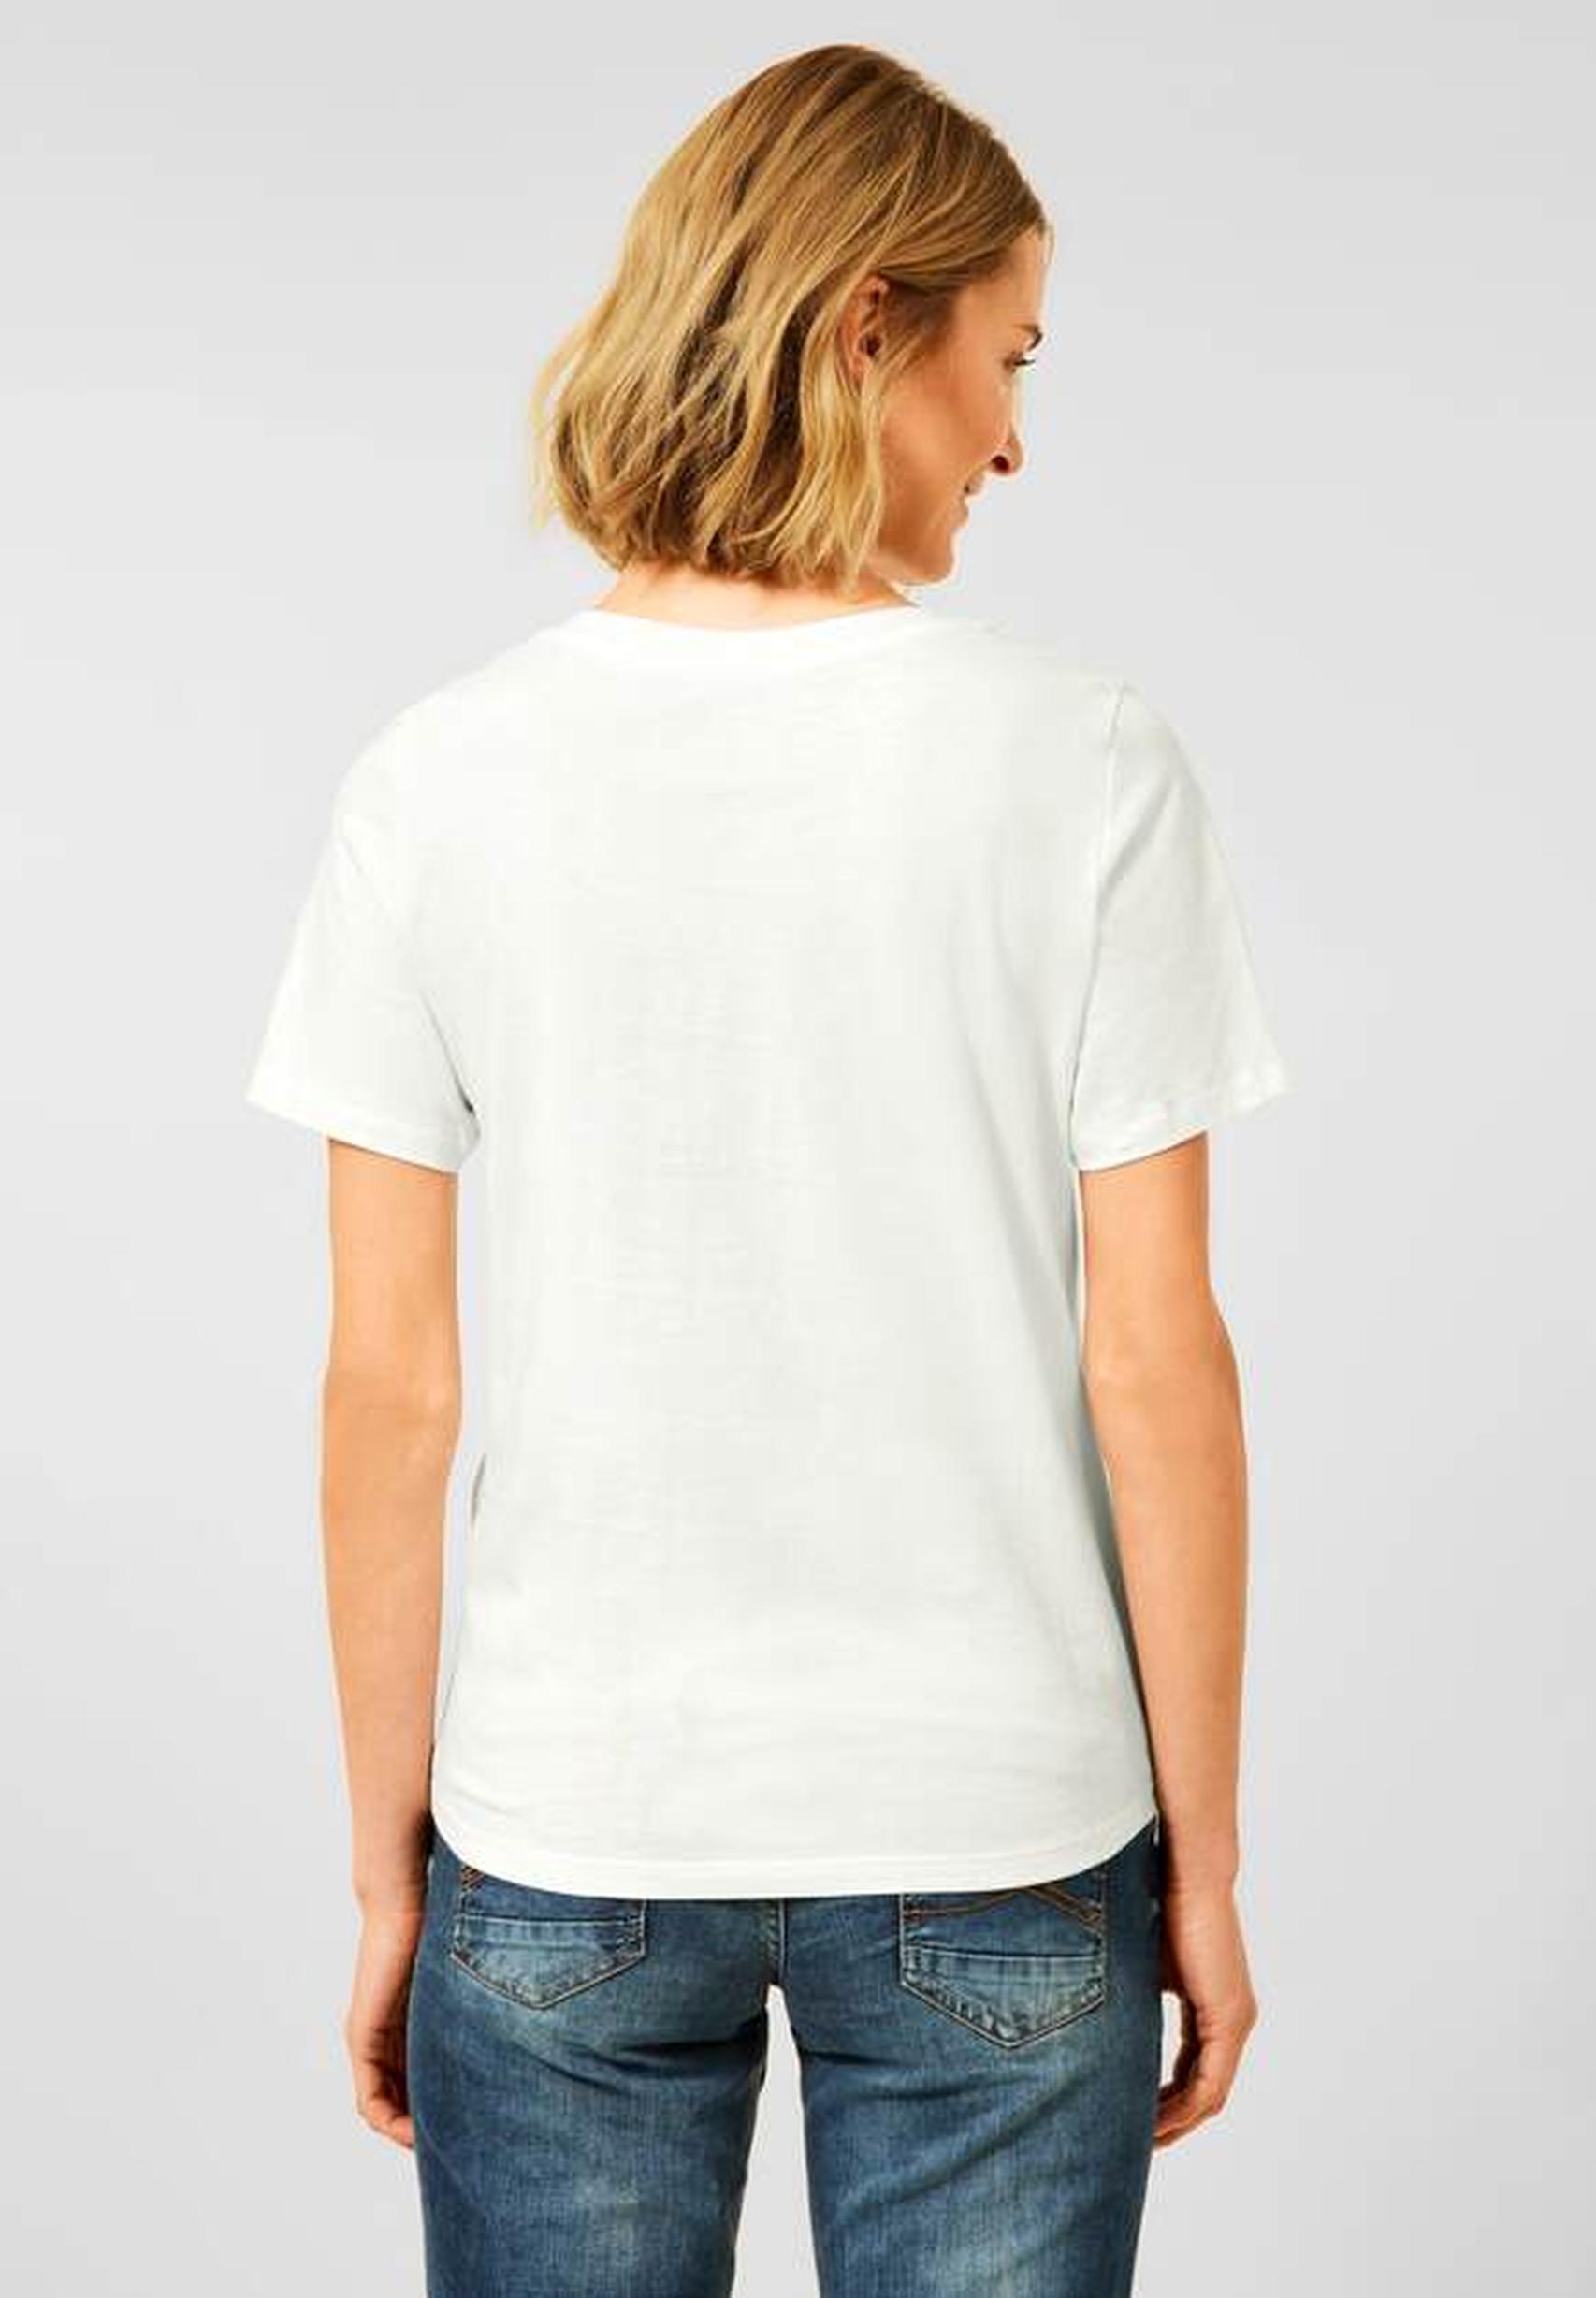 Modisches T-Shirt aus der Kollektion von CECIL in vanilla white - 318468